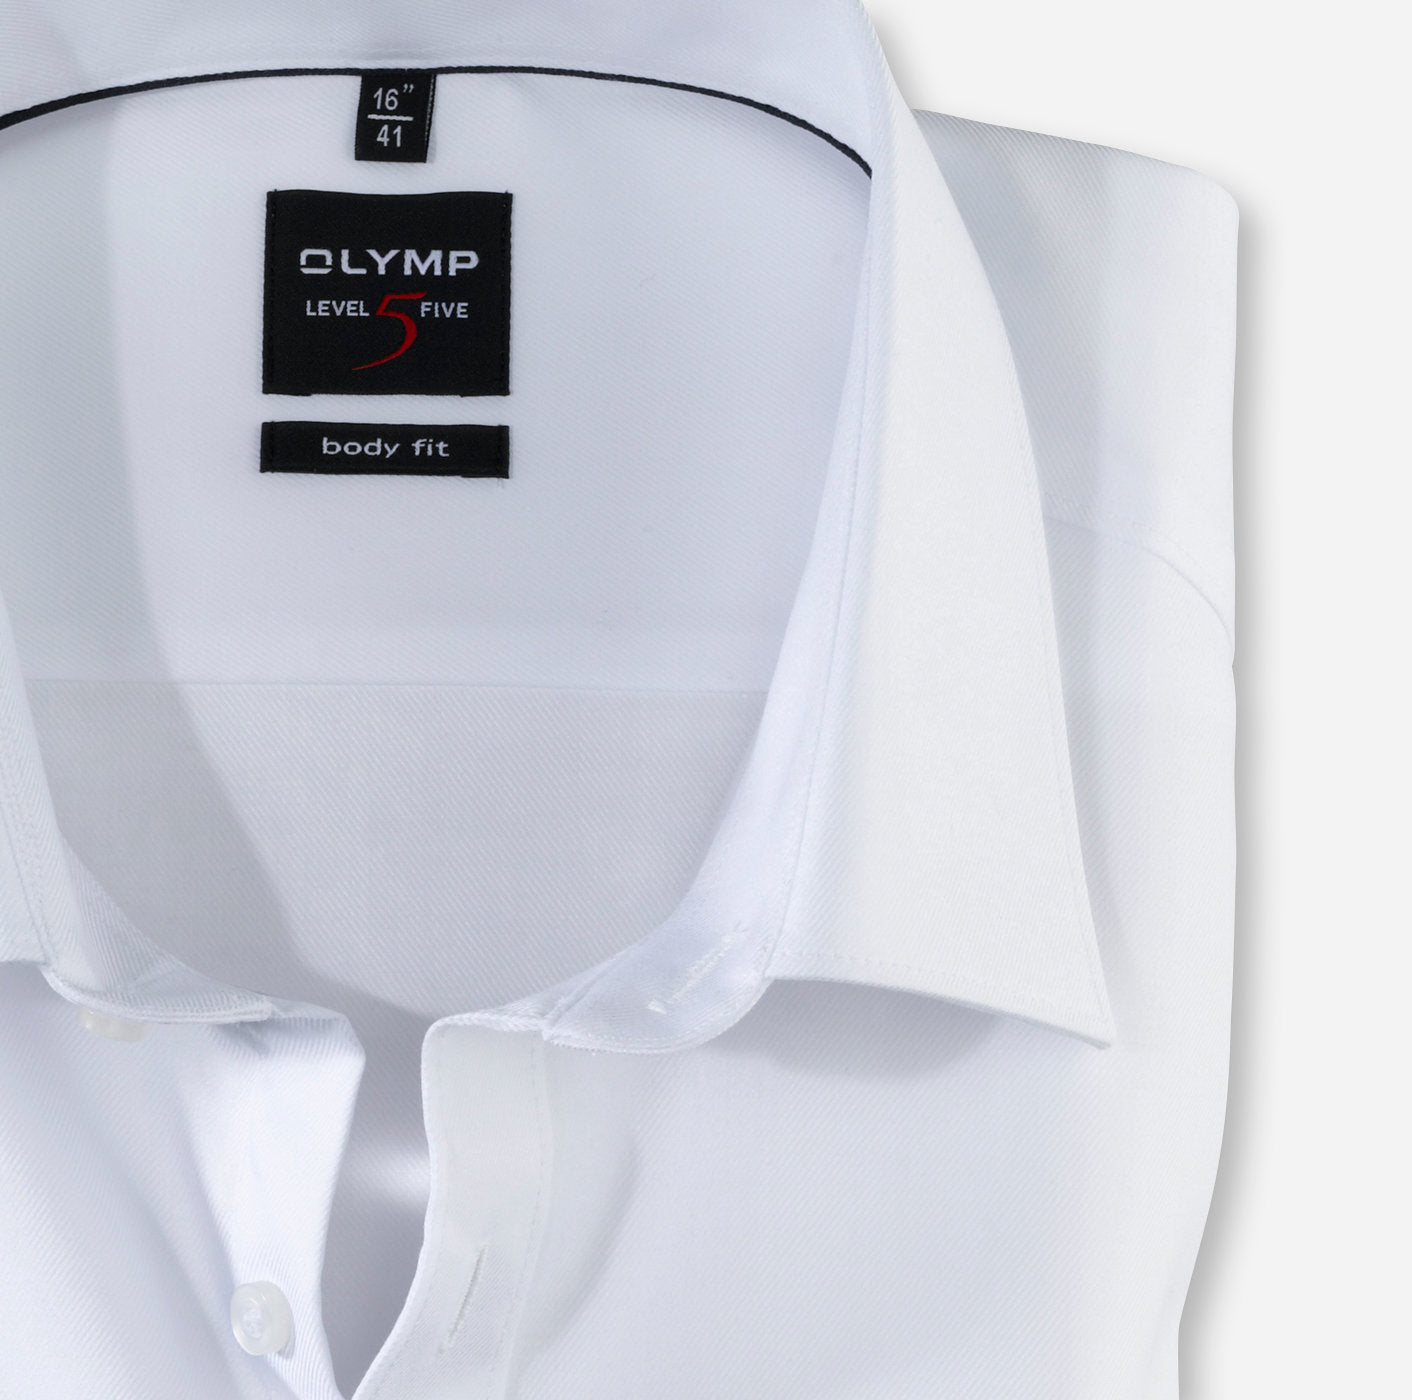 Men - Galvin 5 for Formal Level Shirt Olymp - Body Fit White